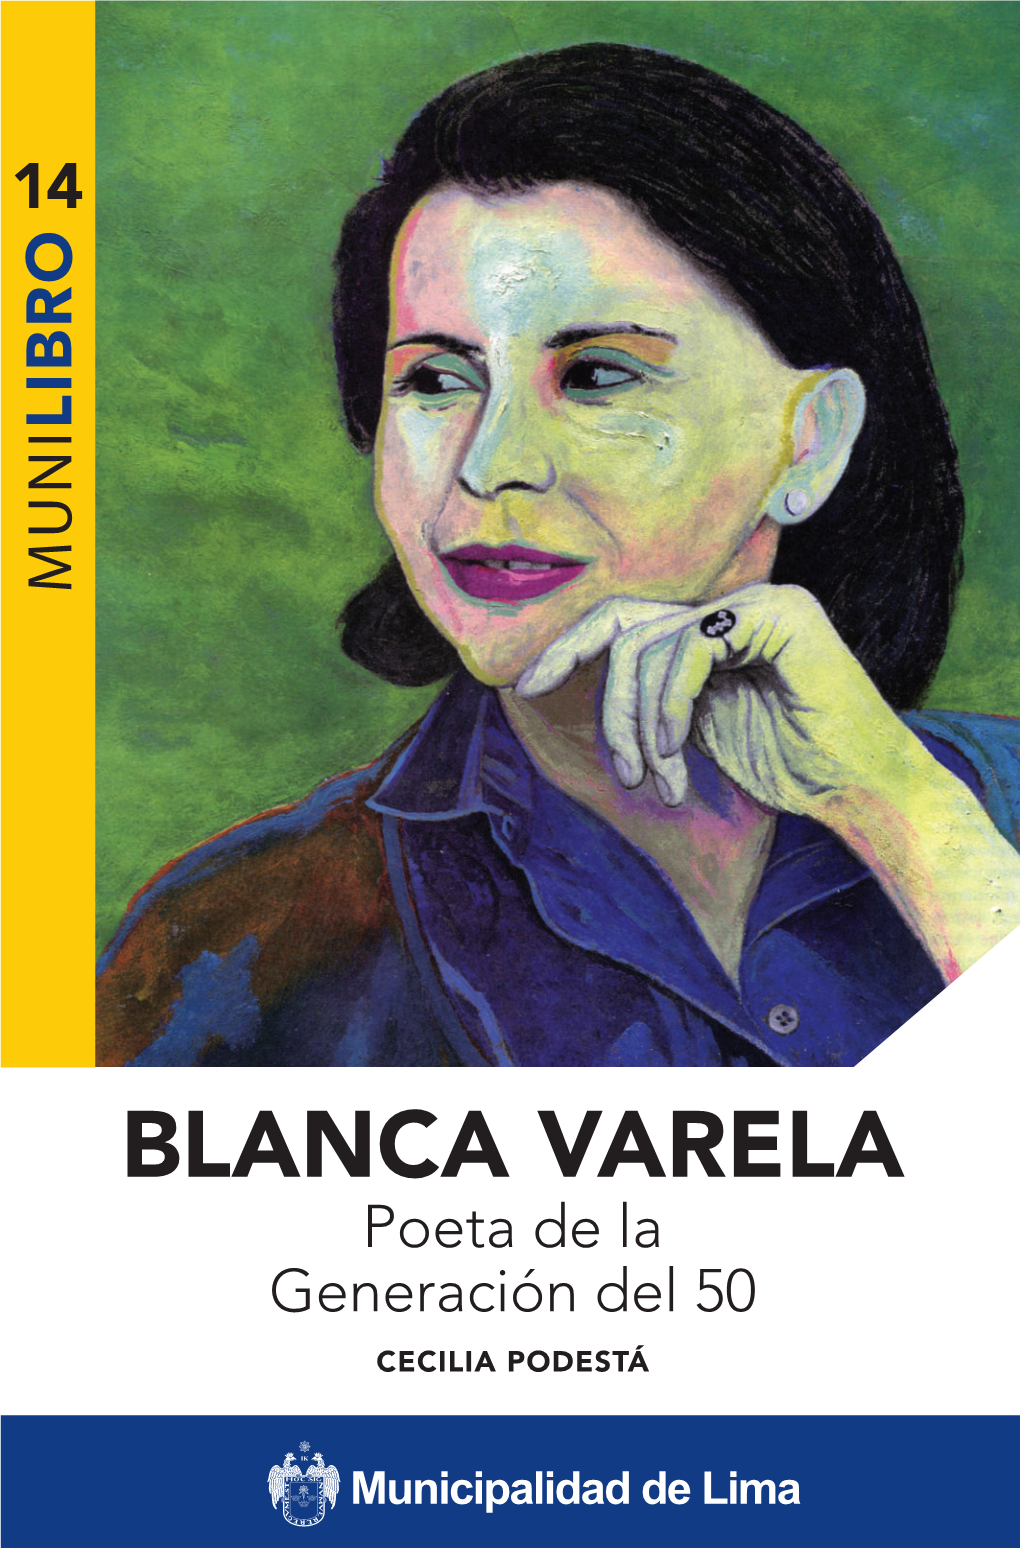 BLANCA VARELA Poeta De La Generación Del 50 CECILIA PODESTÁ Cecilia Podestá (1981) Estudió Literatura En La Universidad Nacional Mayor De San Marcos